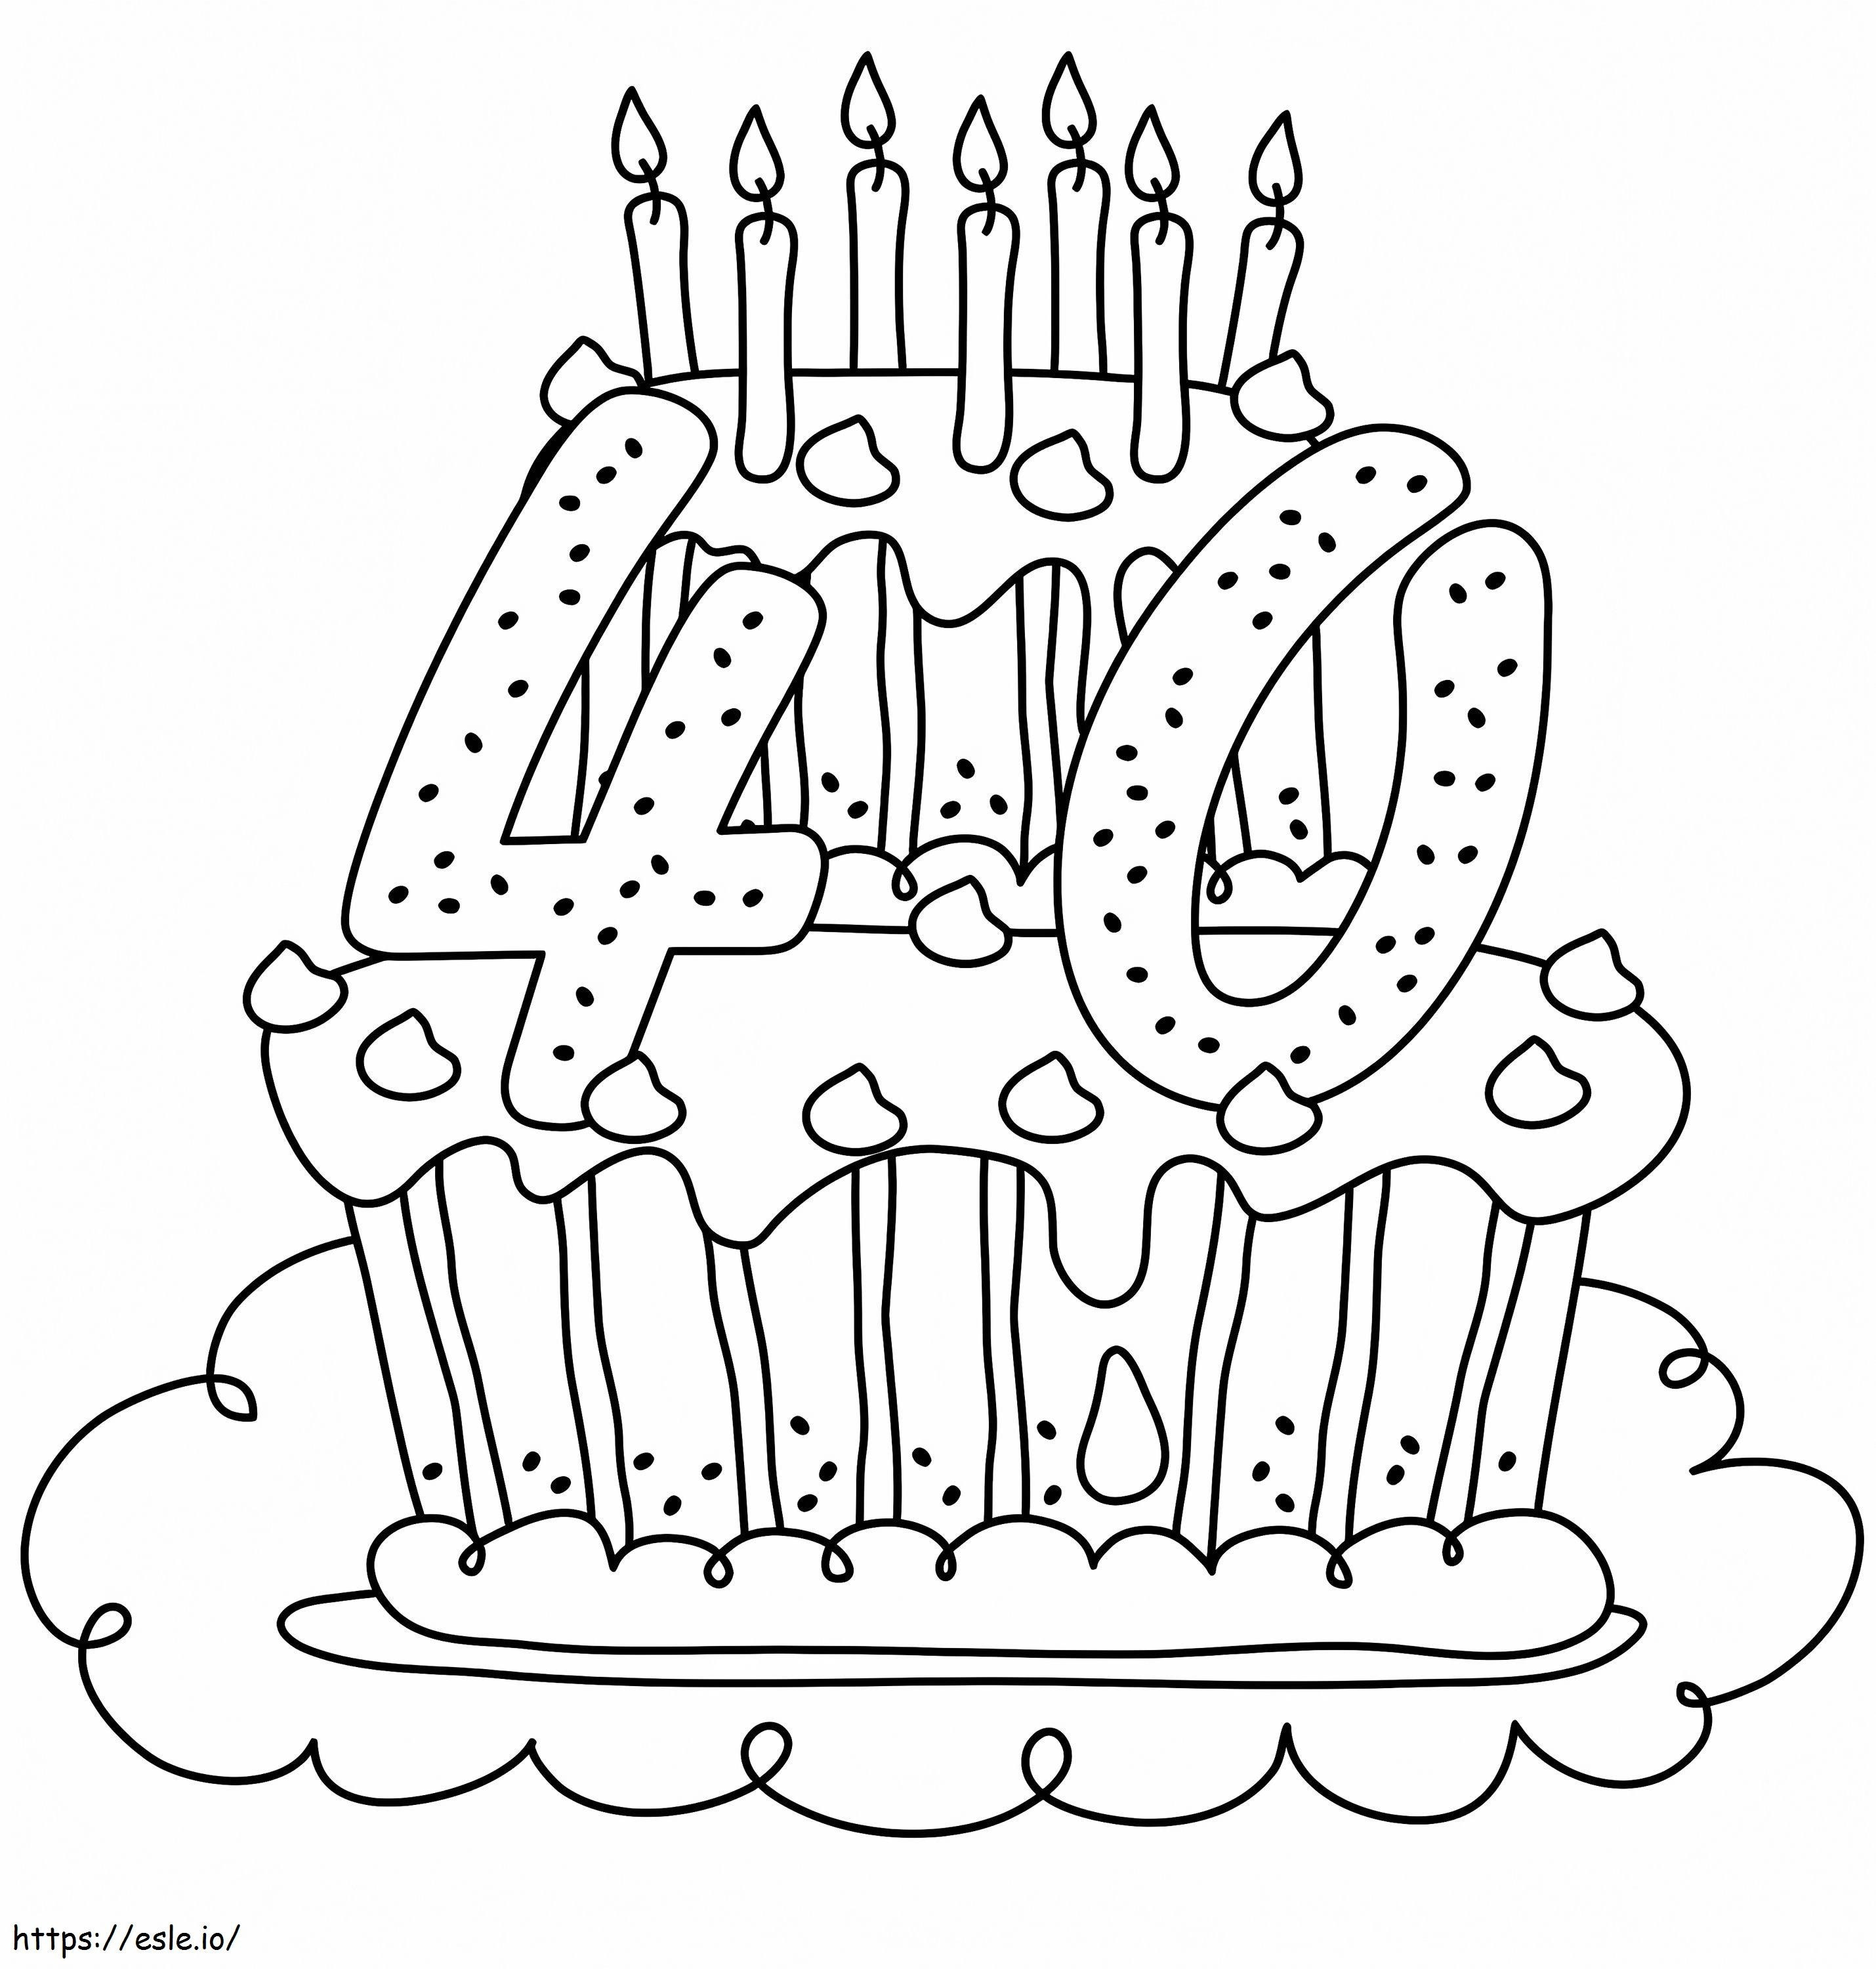 Coloriage 1586161854 ans gâteau gratuit joyeux anniversaire feuilles de coloriage à imprimer dessin